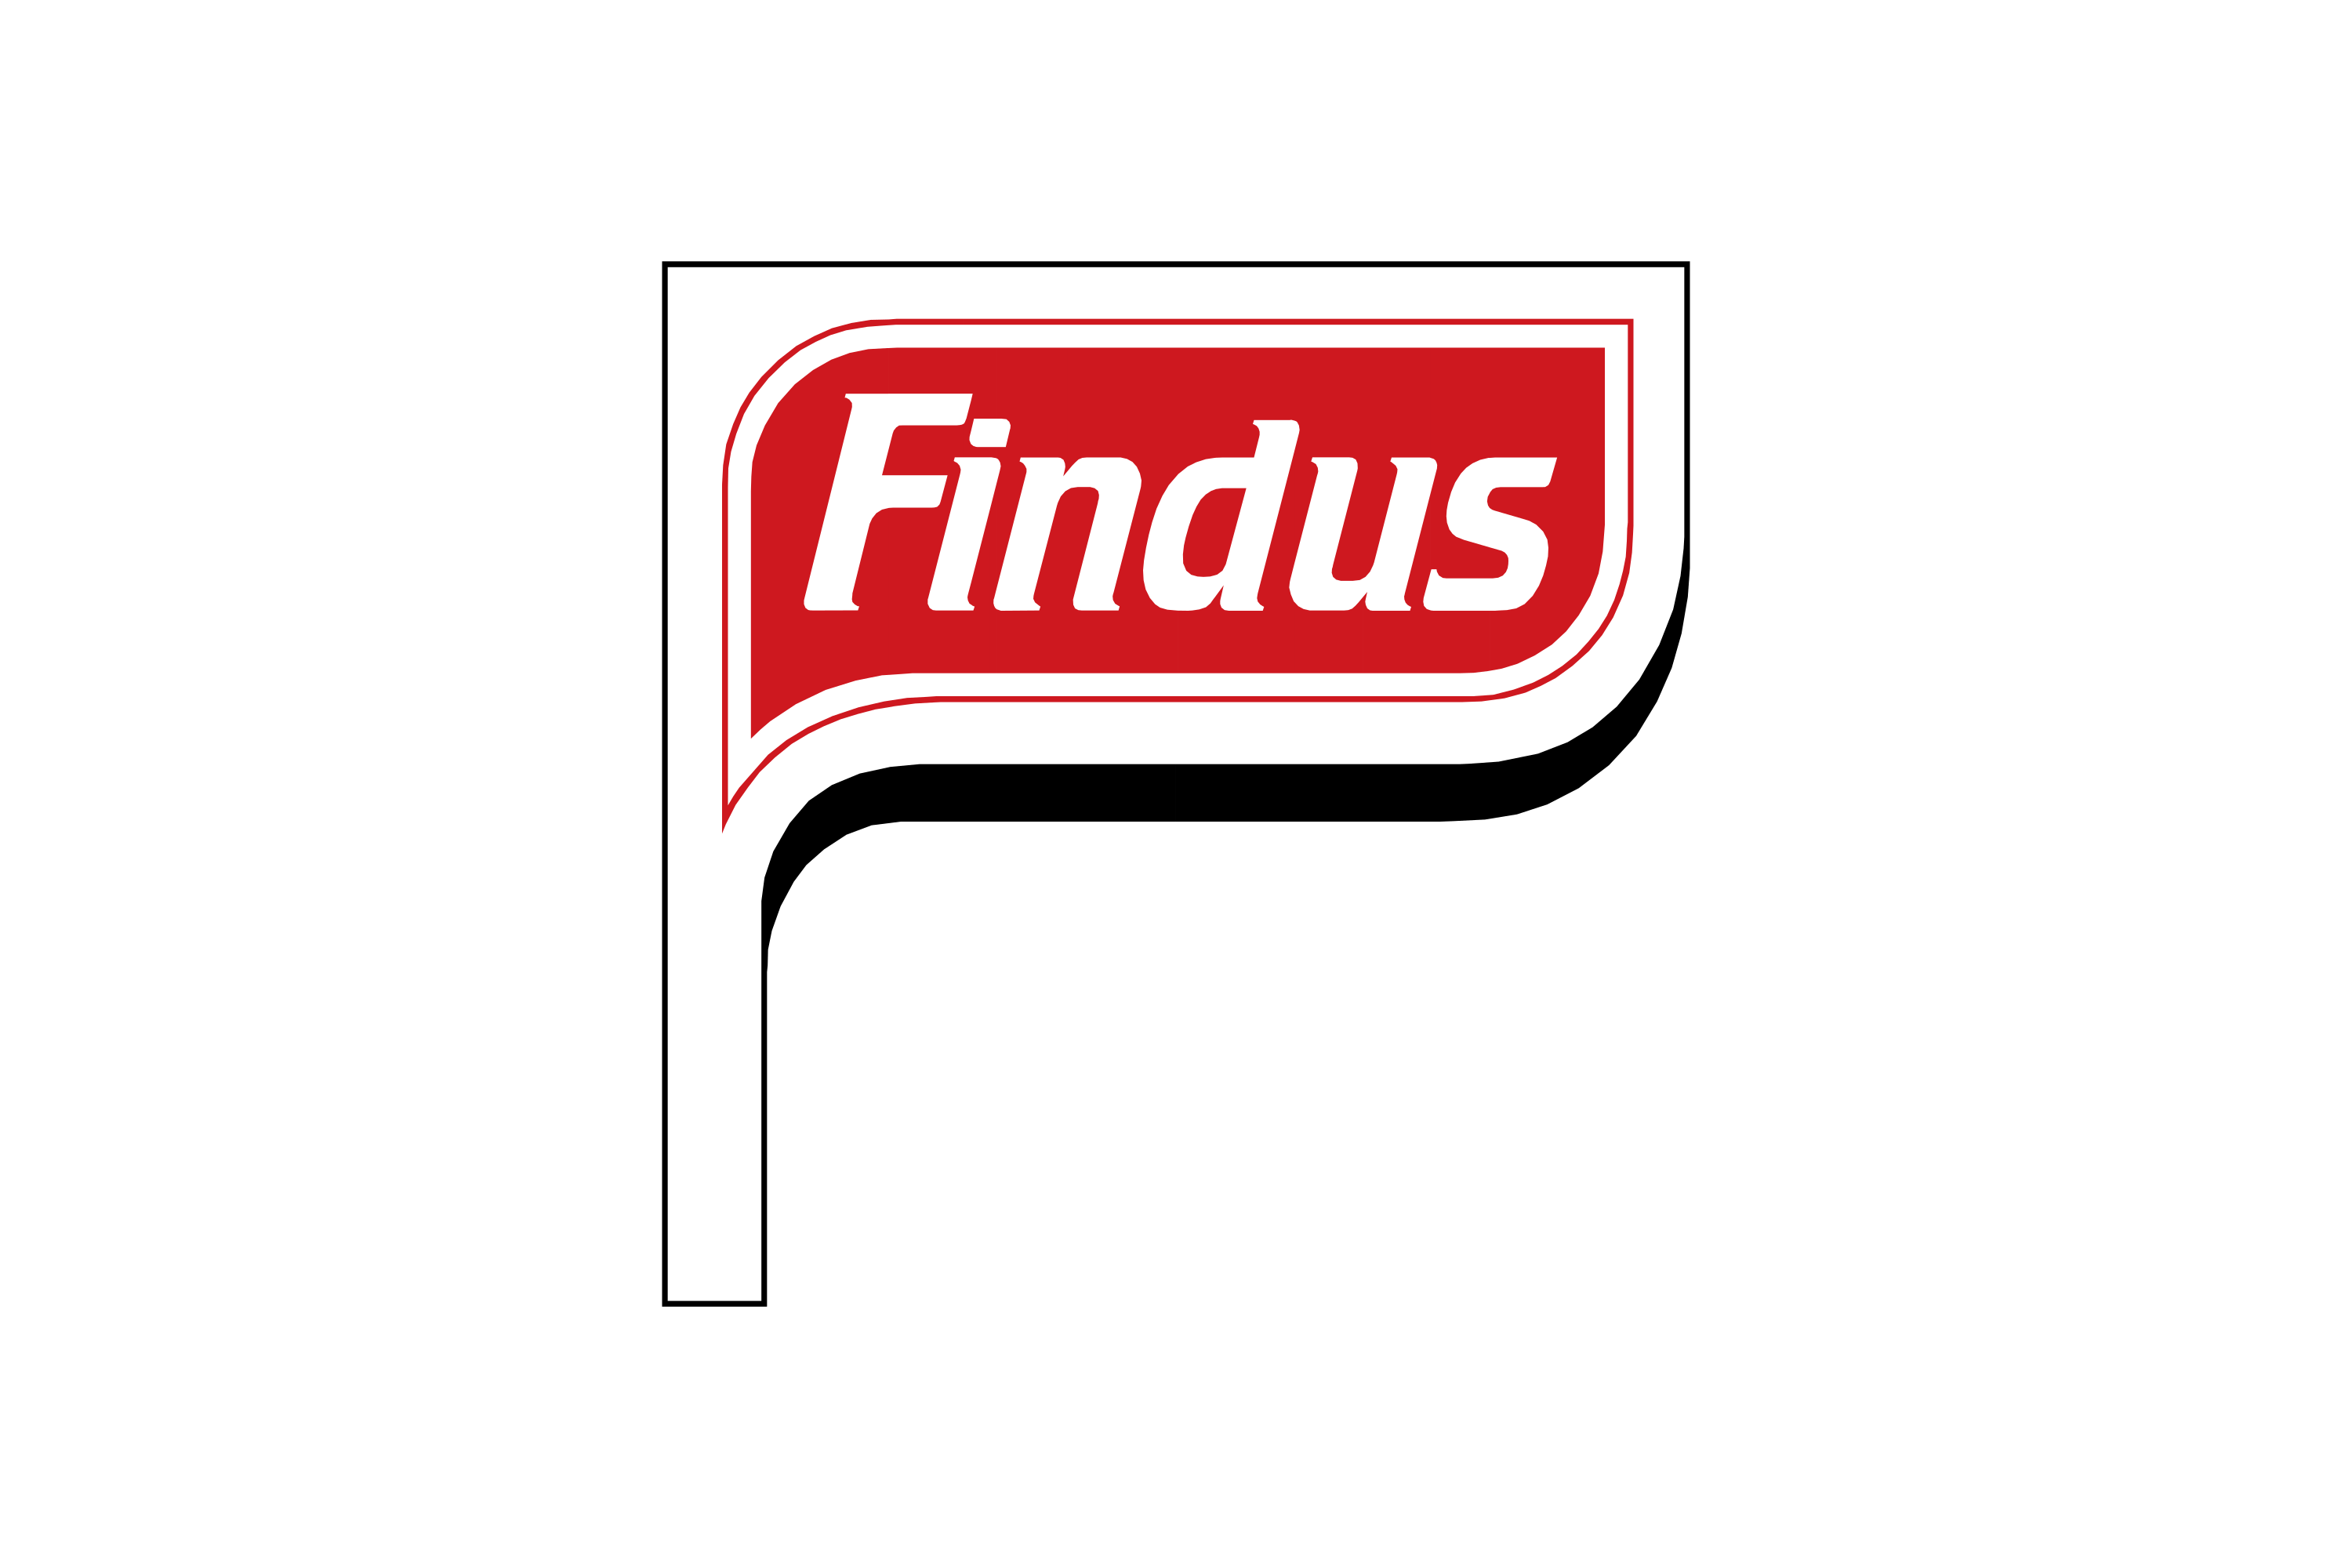 Download Findus Logo in SVG Vector or PNG File Format - Logo.wine